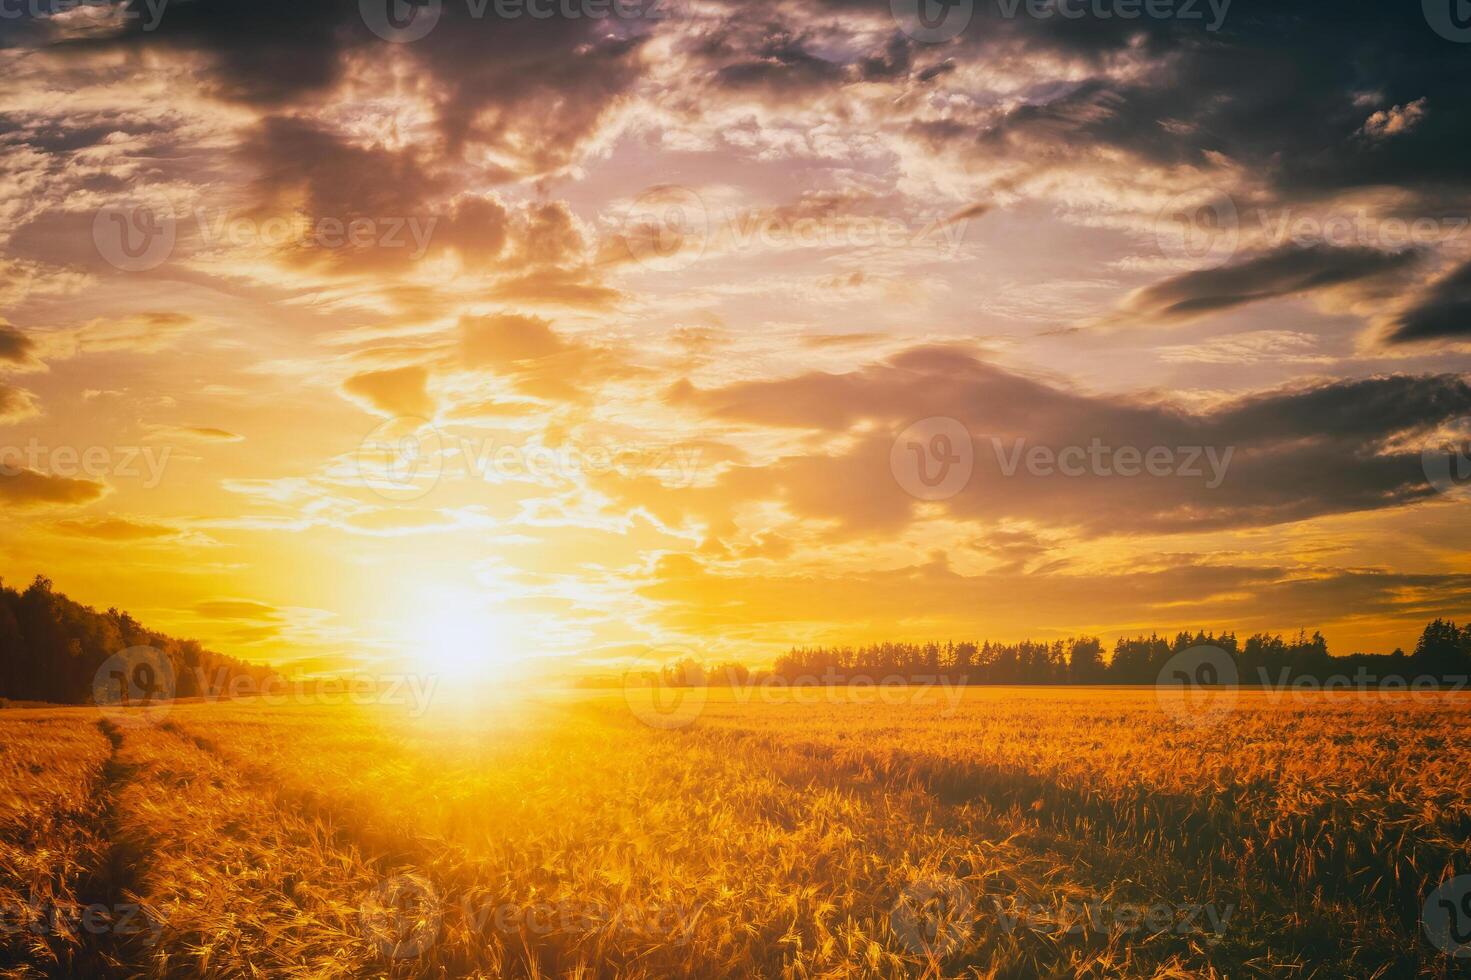 solnedgång eller gryning i en råg eller vete fält med en dramatisk molnig himmel under sommartid. estetik av årgång filma. foto